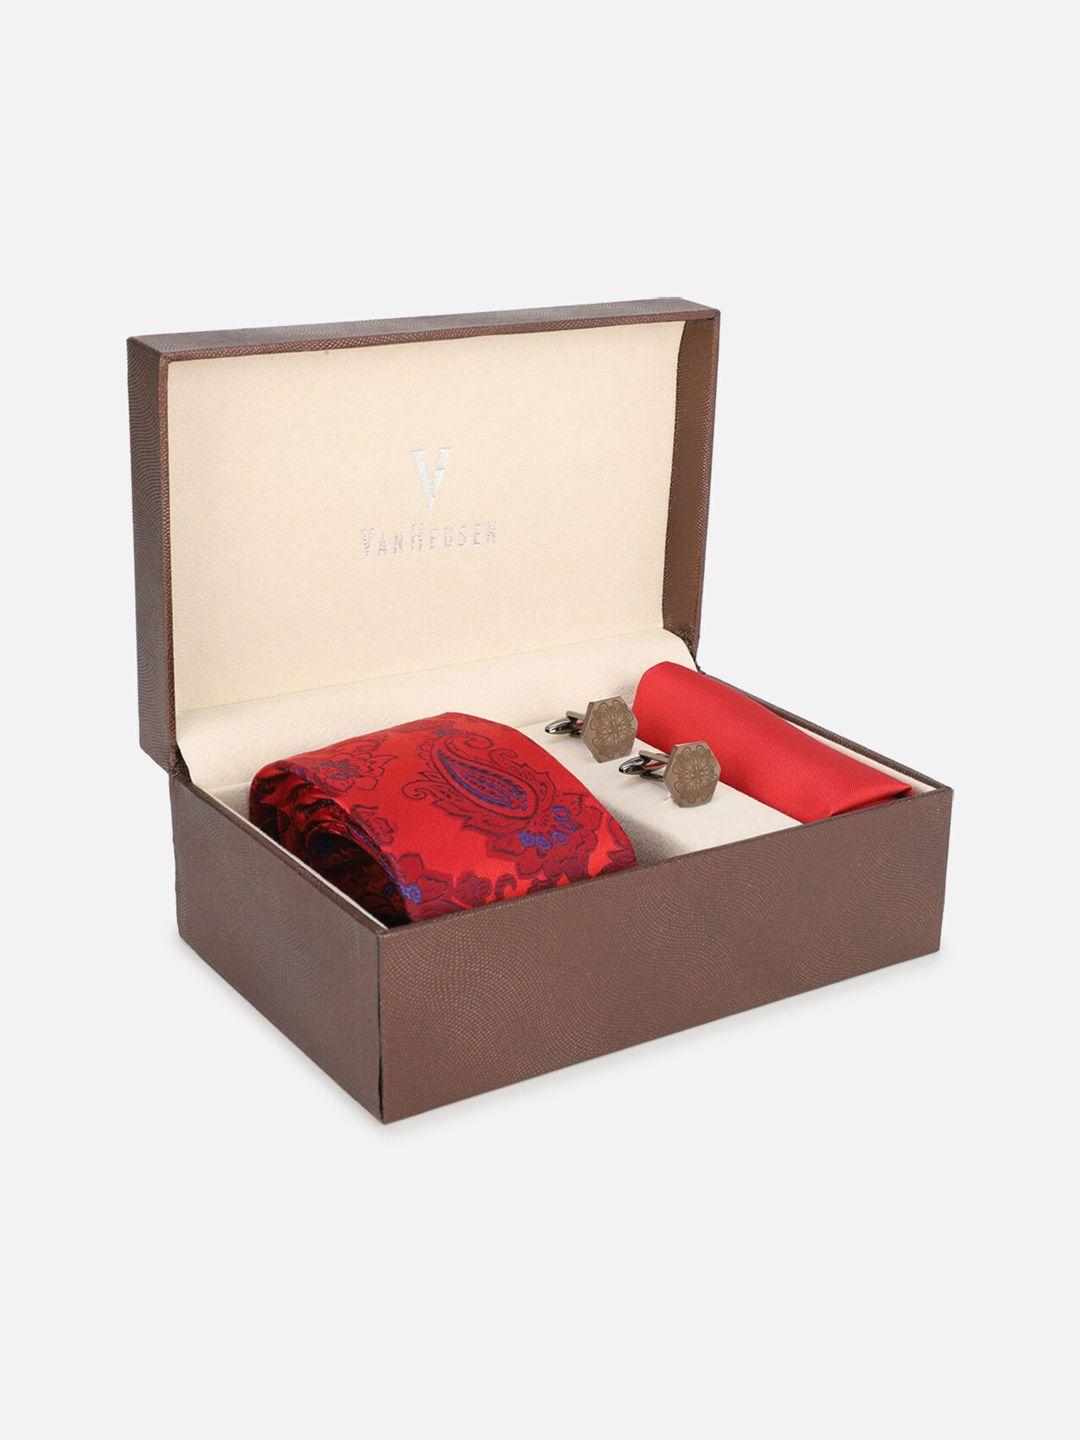 van-heusen-men-red-accessory-gift-set